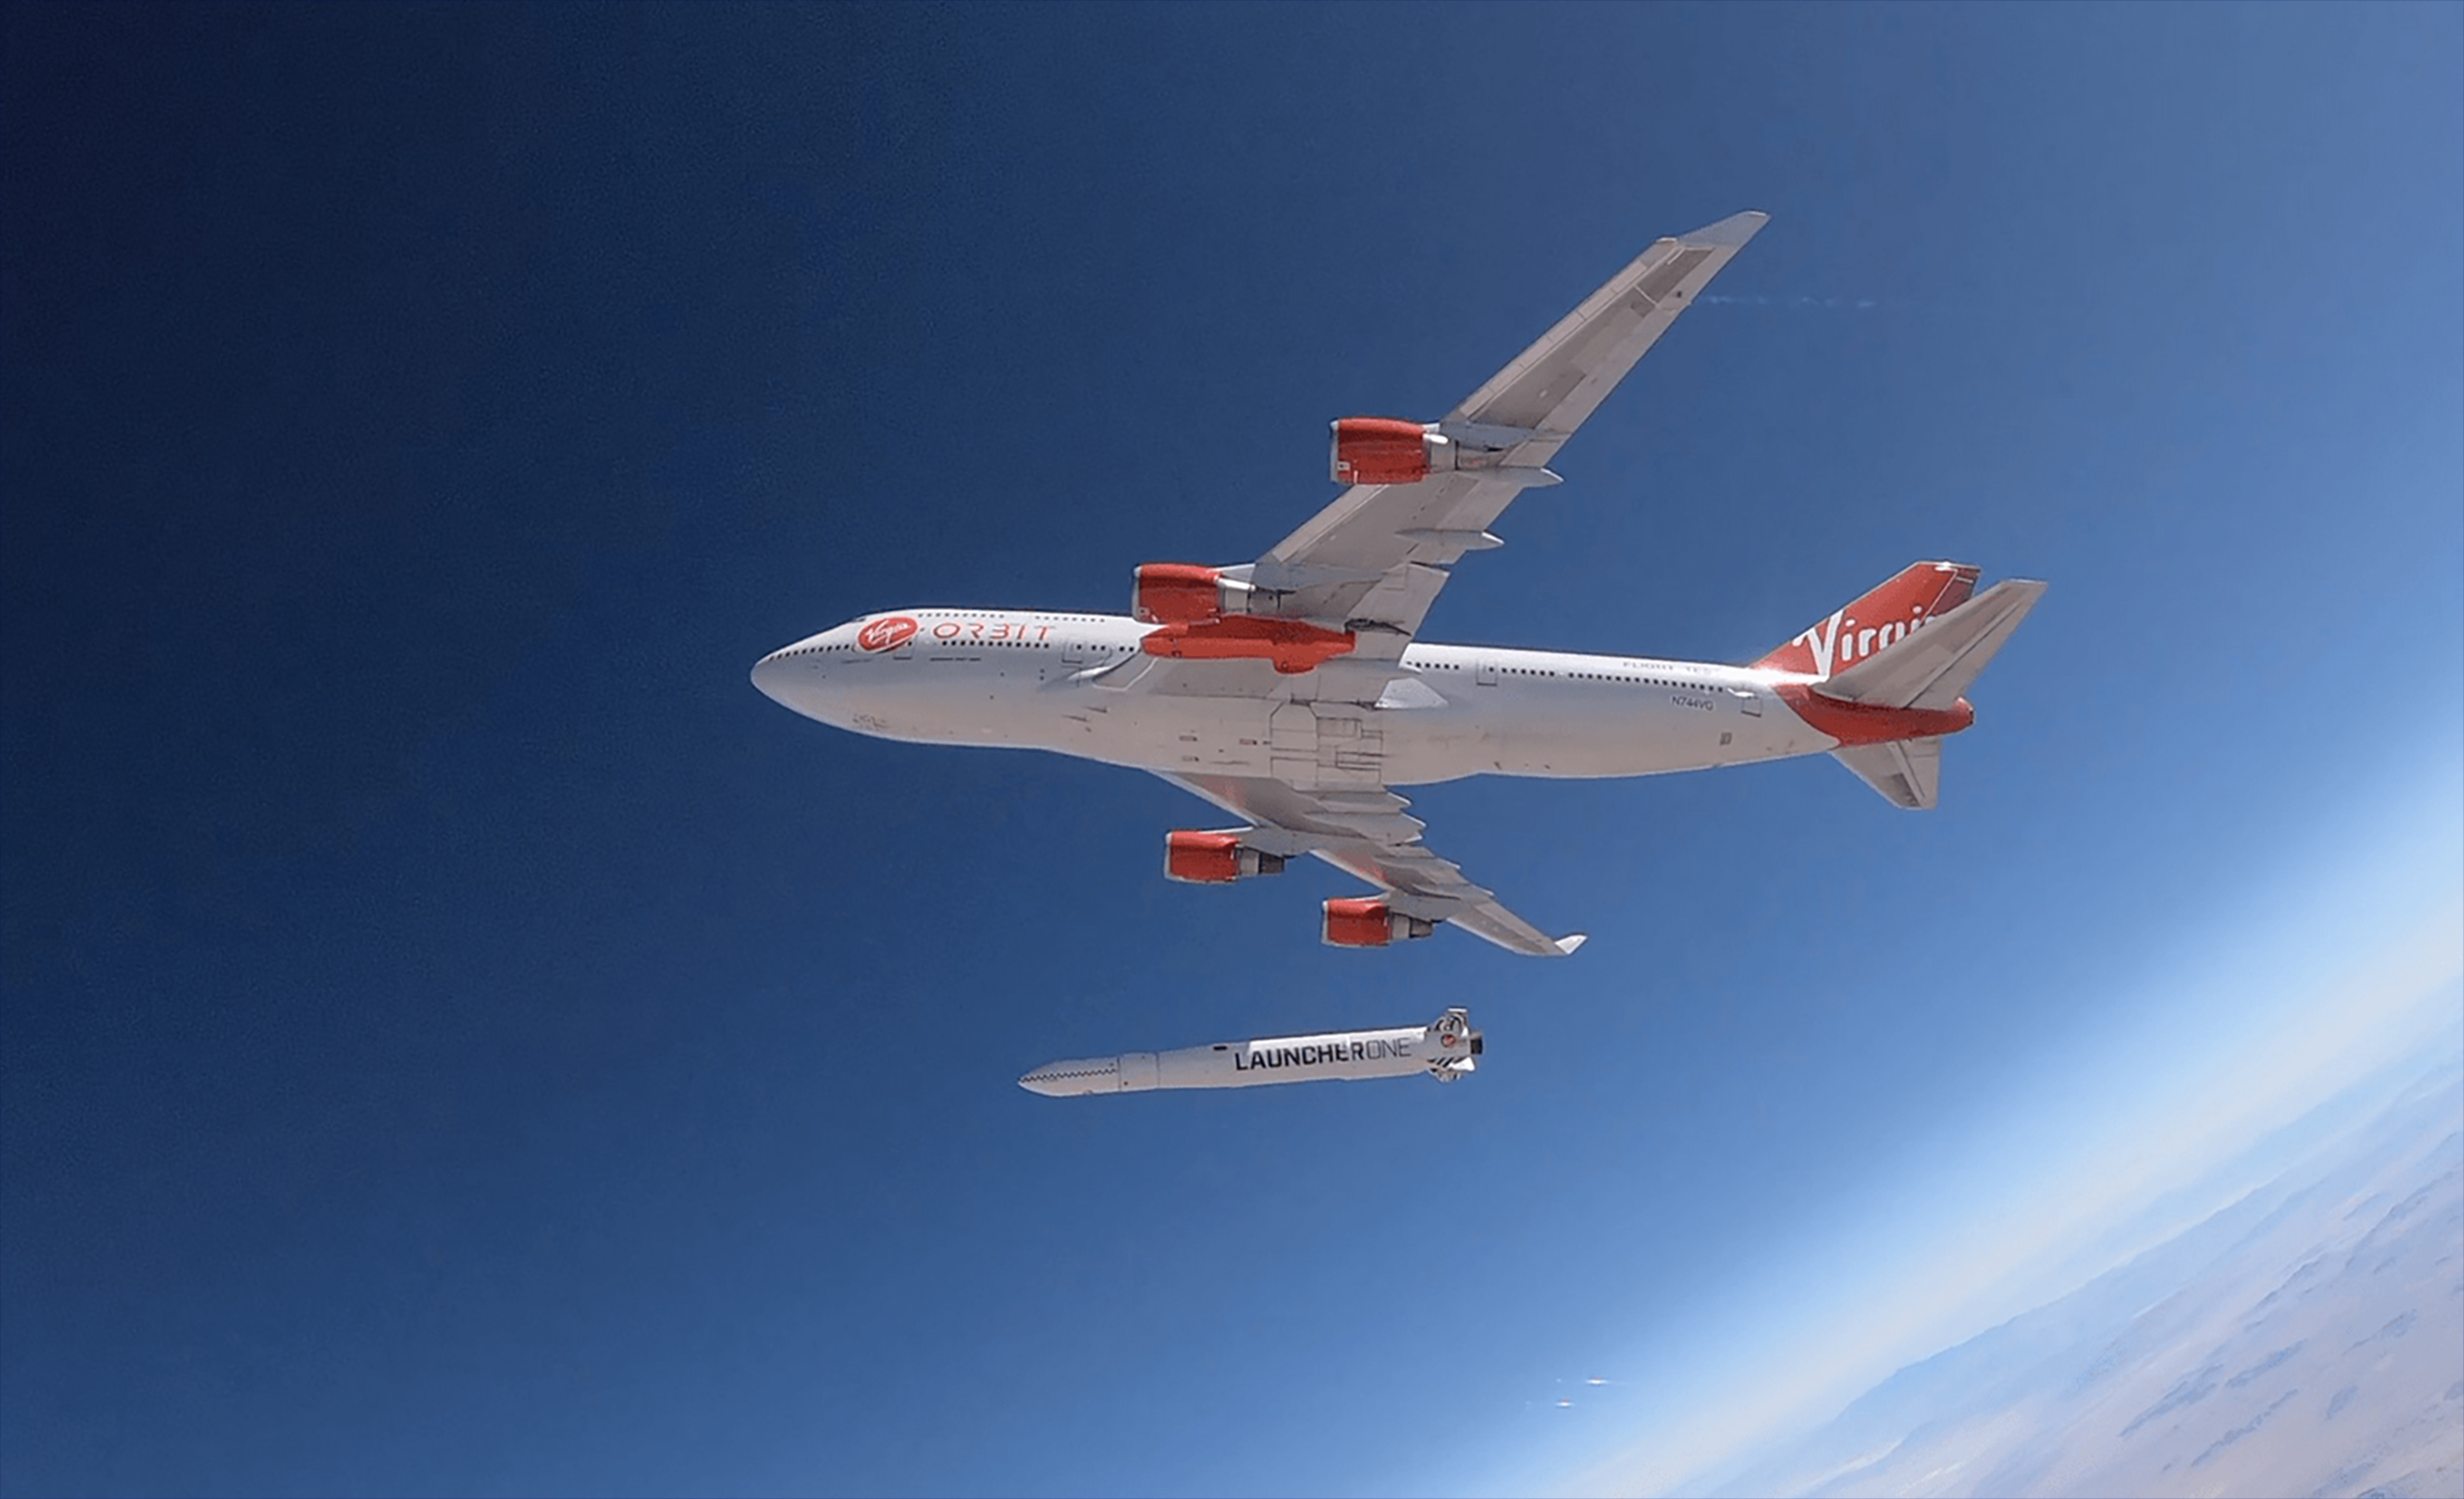 Le Launcher One est un lanceur aéroporté qui « décolle » depuis un avion. Développé par Virgin Orbit, filiale de Virgin Galactic, sa mise en service est prévu en 2020. © Virgin Orbit